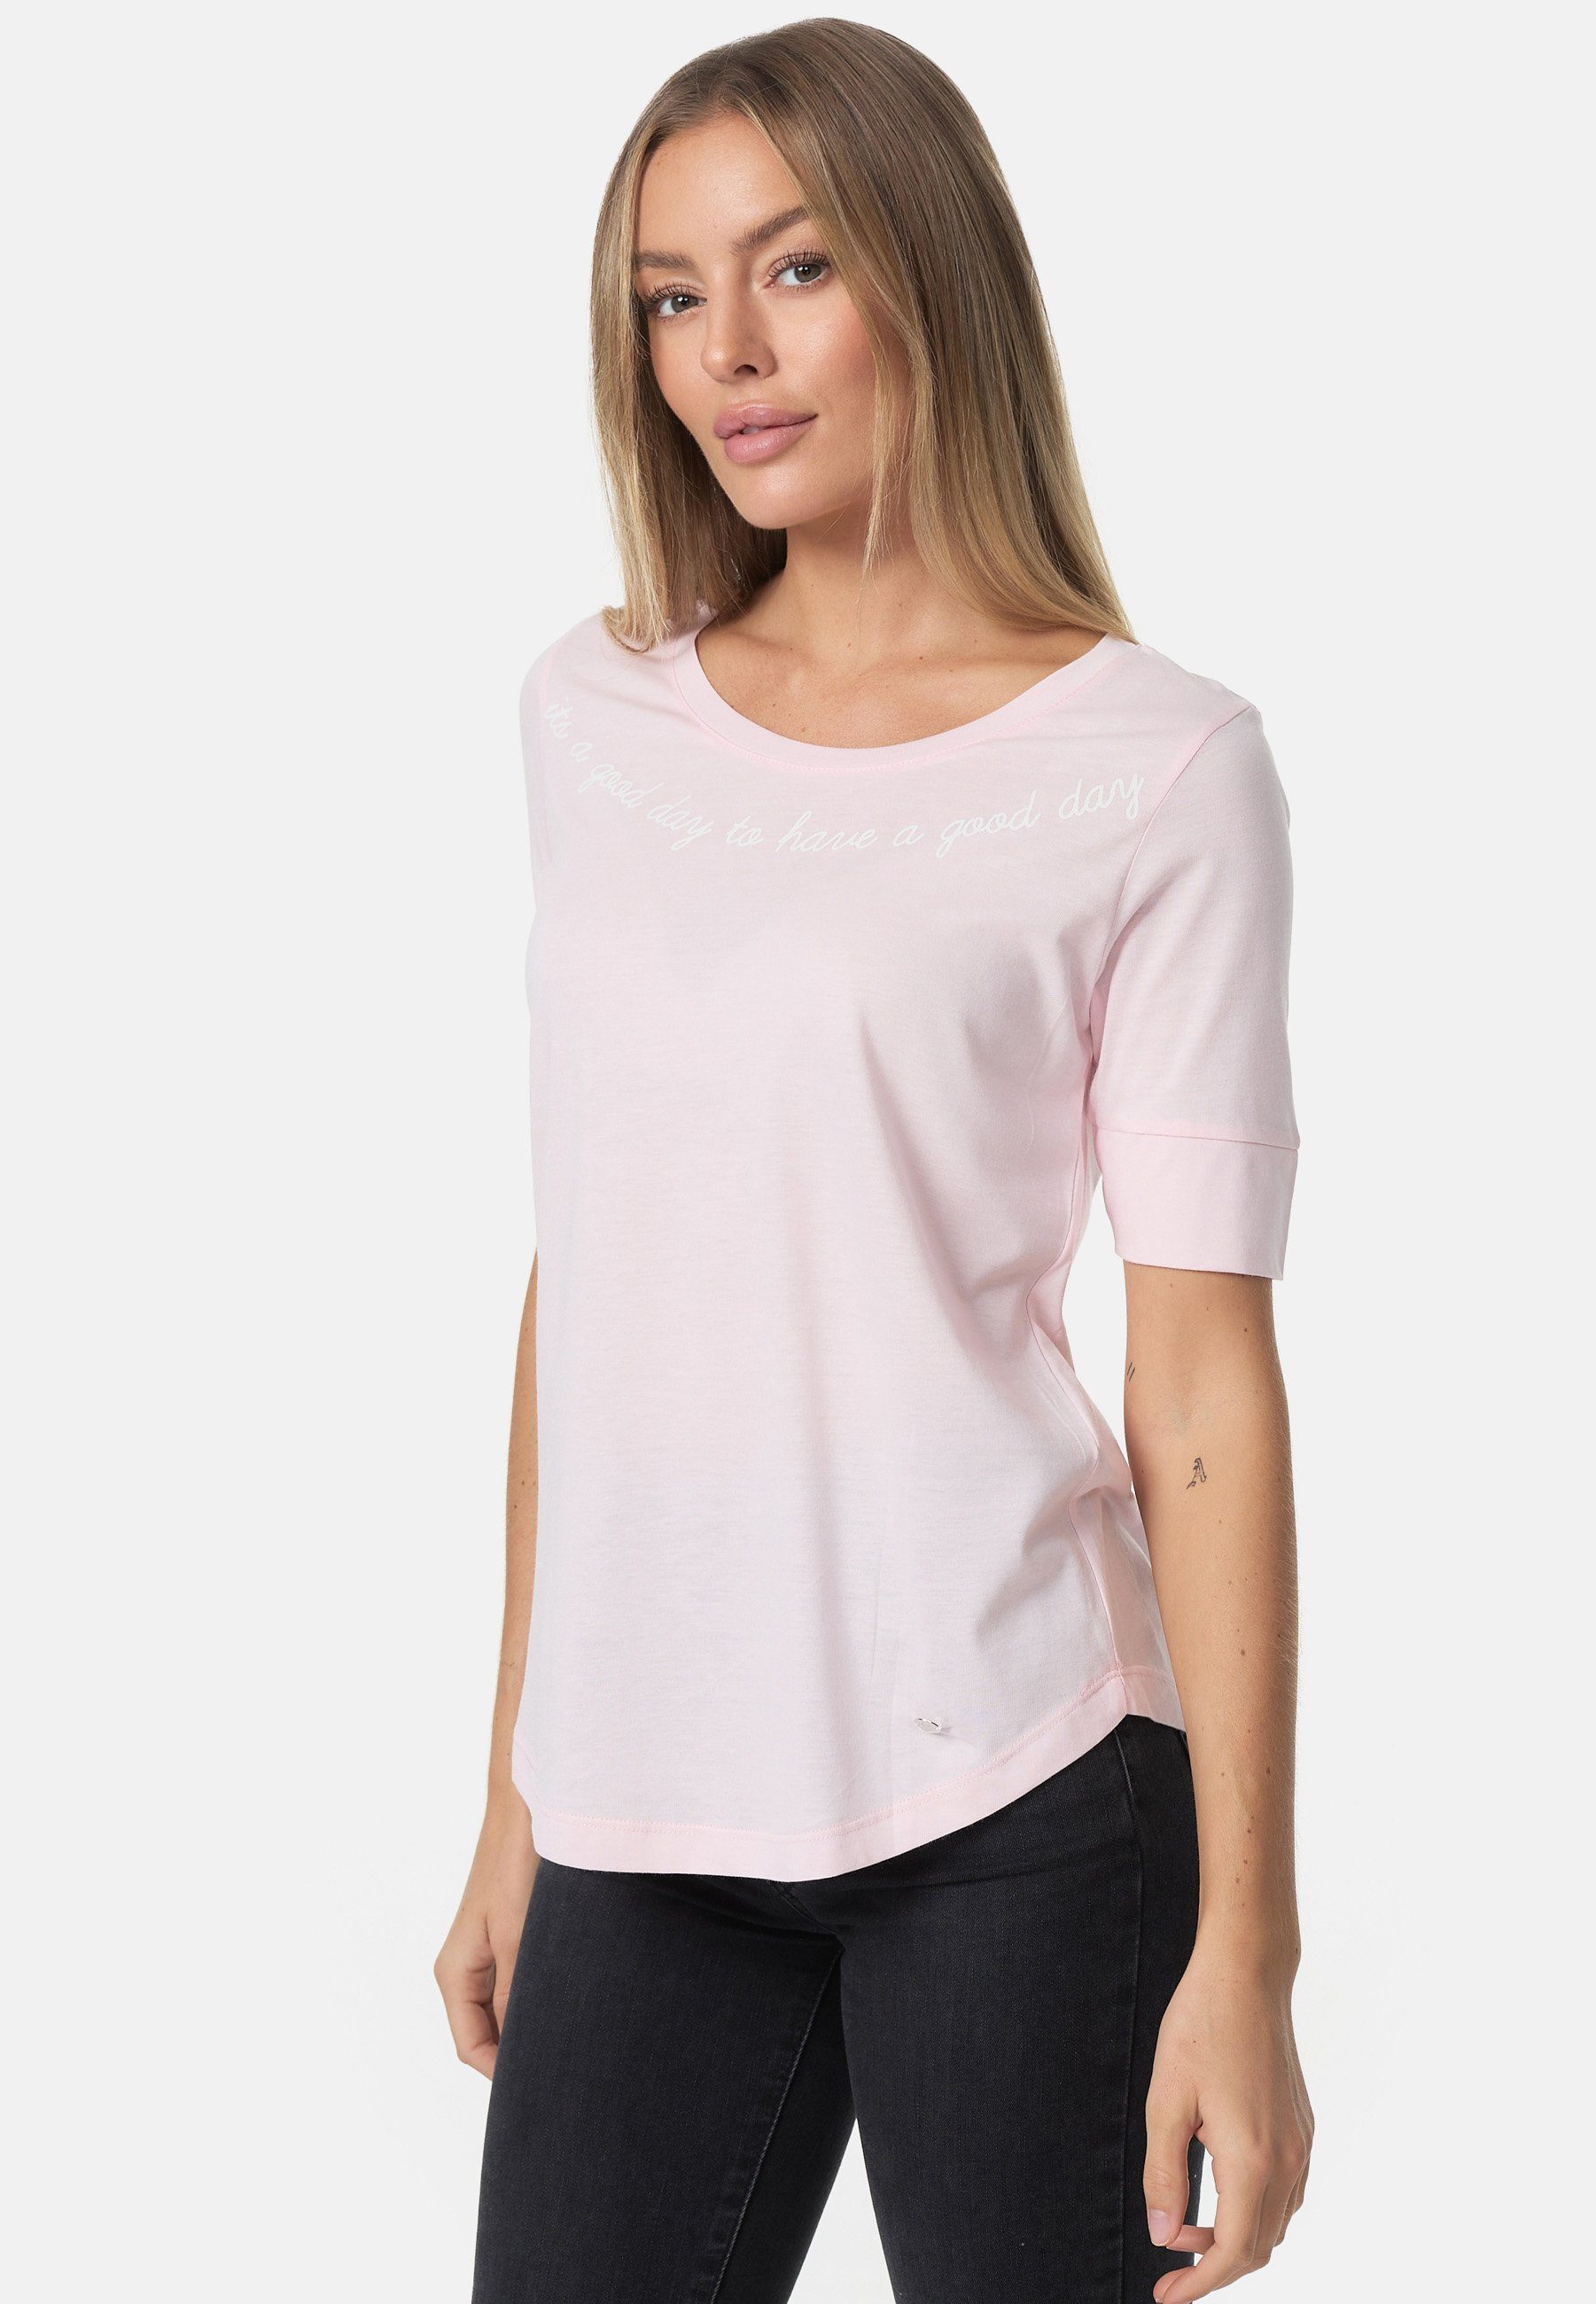 Decay T-Shirt mit stylischem rosa-weiß Print